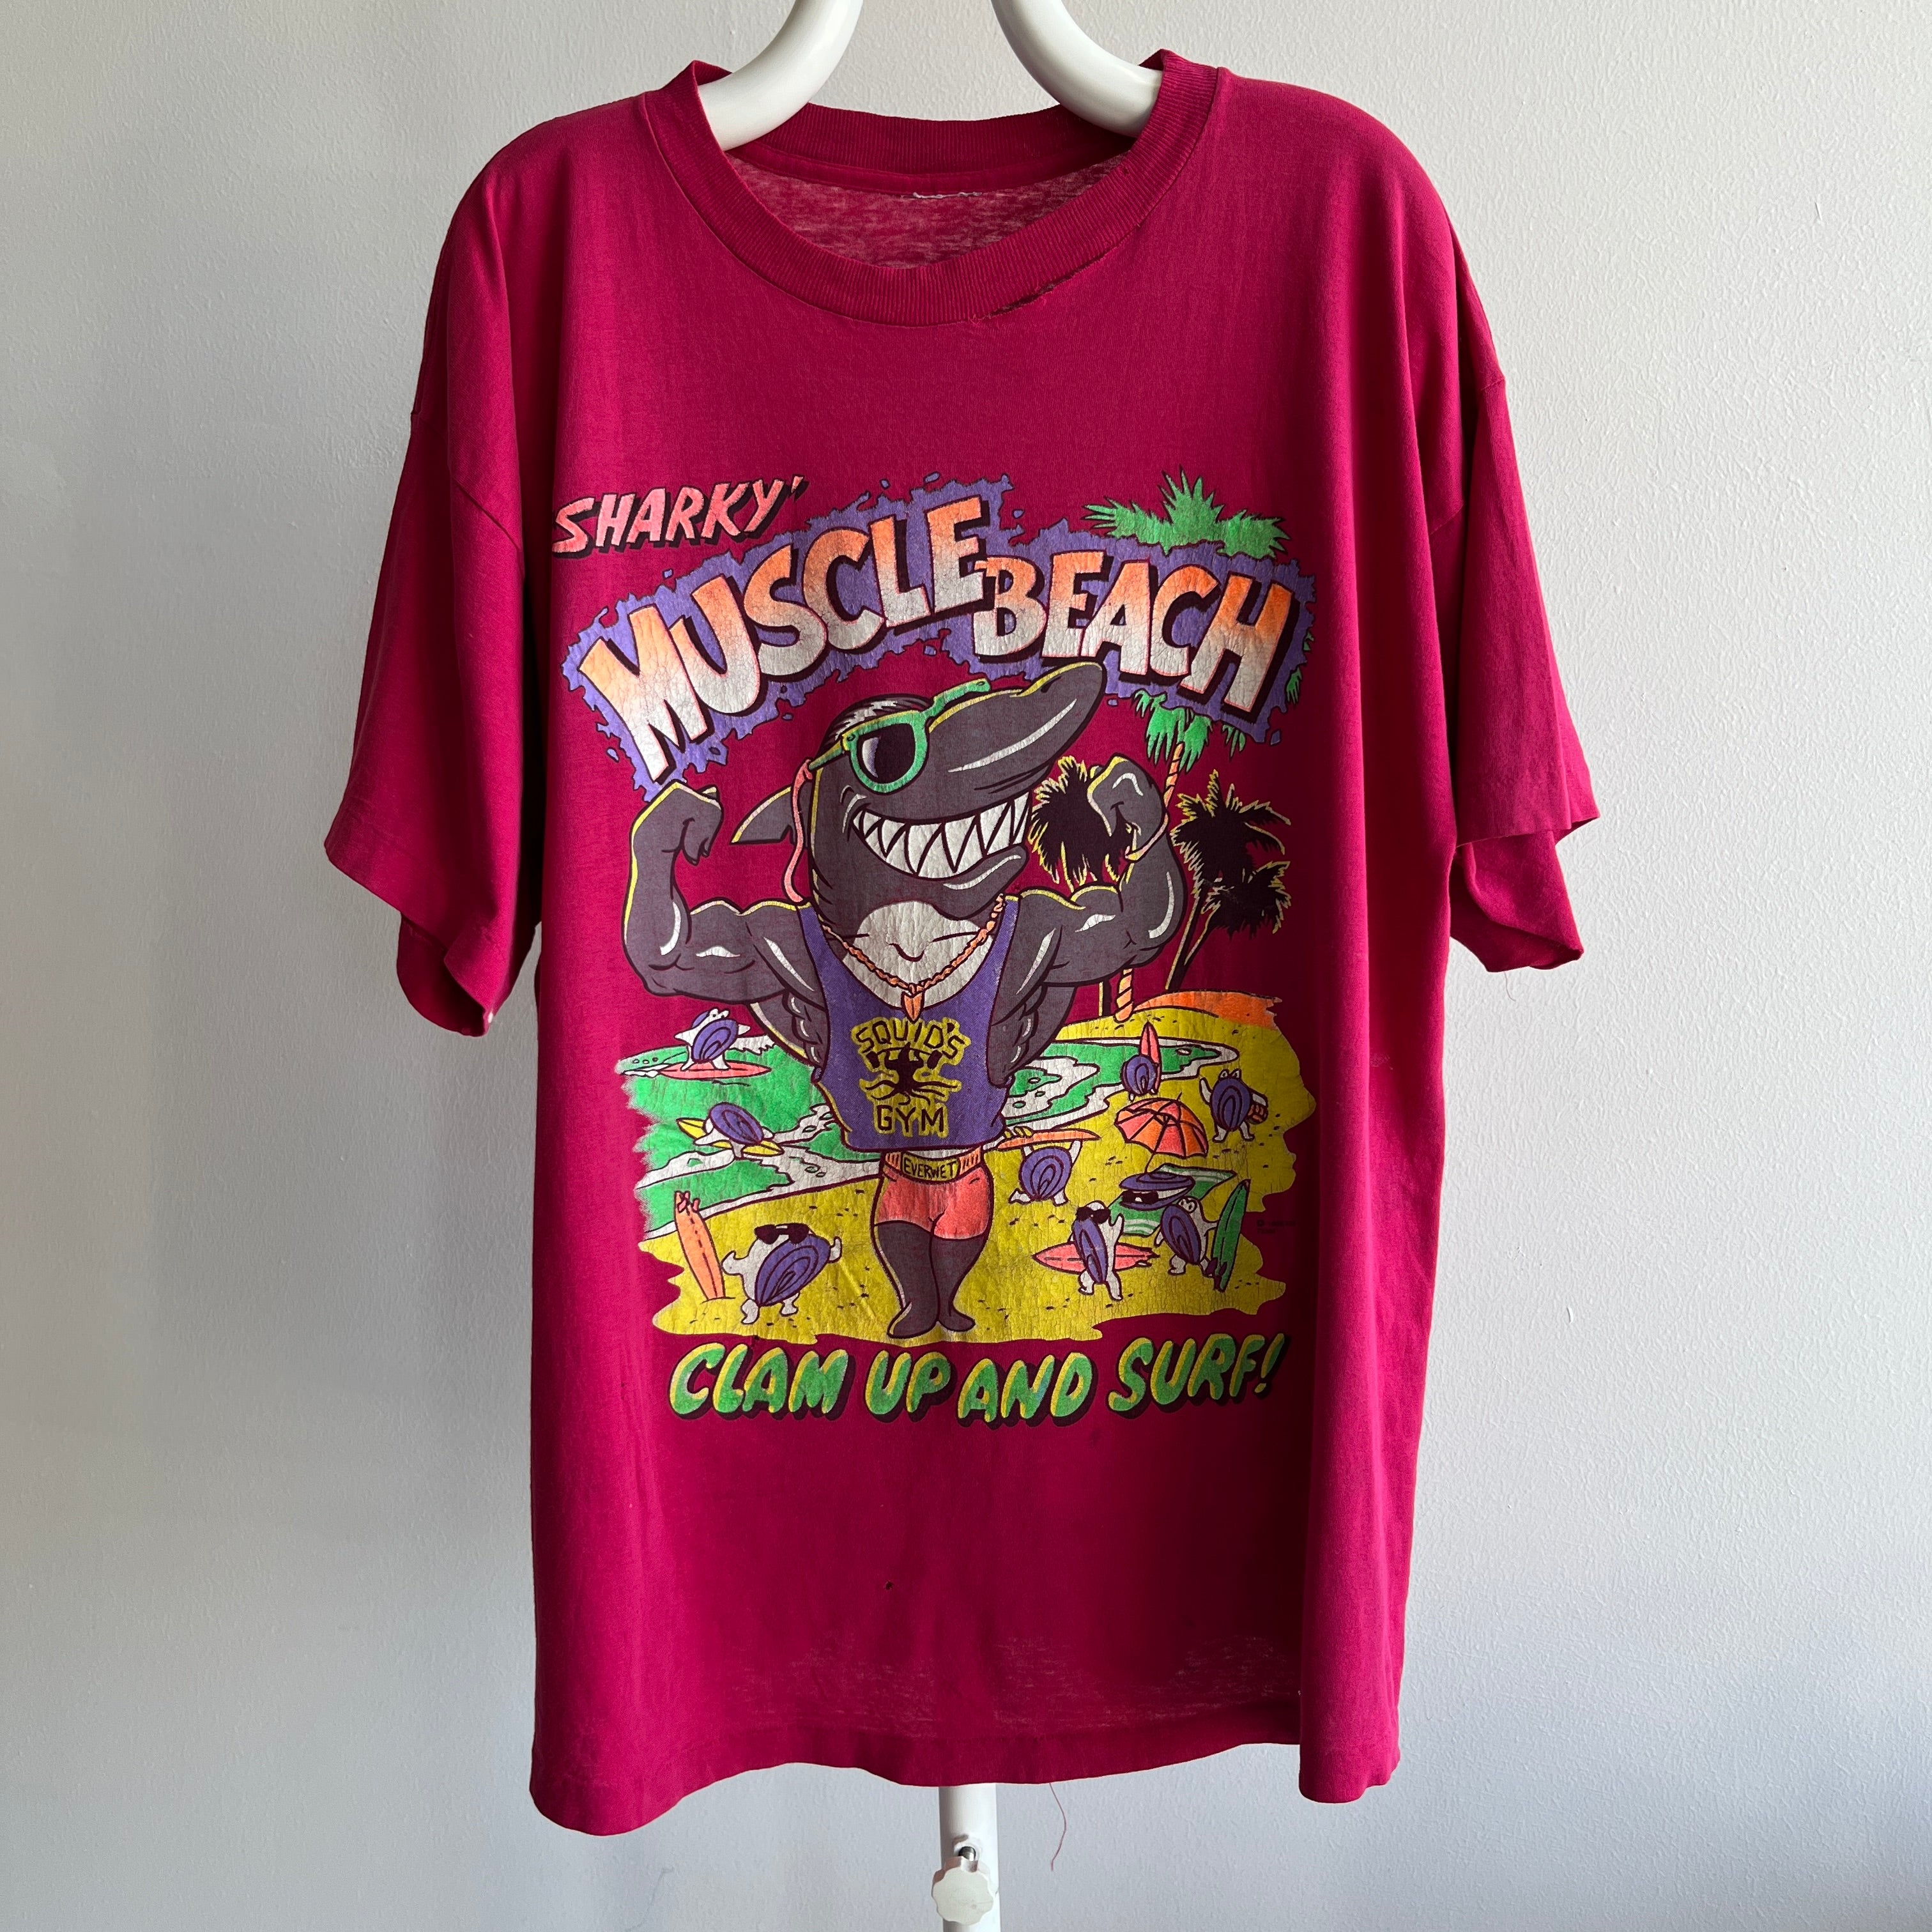 1992 Sharky's Muscle Beach Beat Up T-Shirt